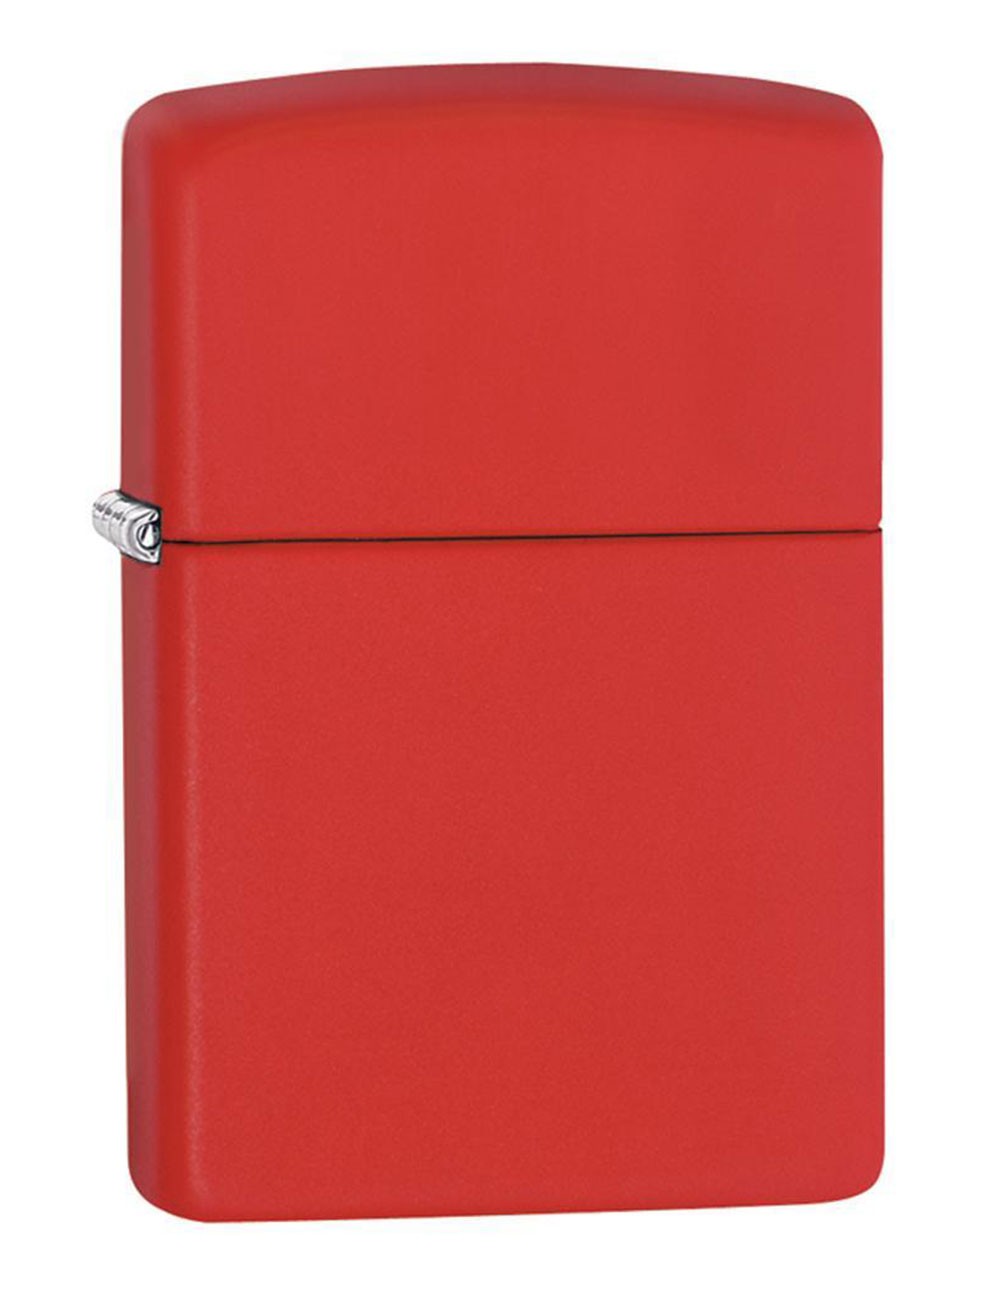 Original Zippo Lighter Red Matte 233